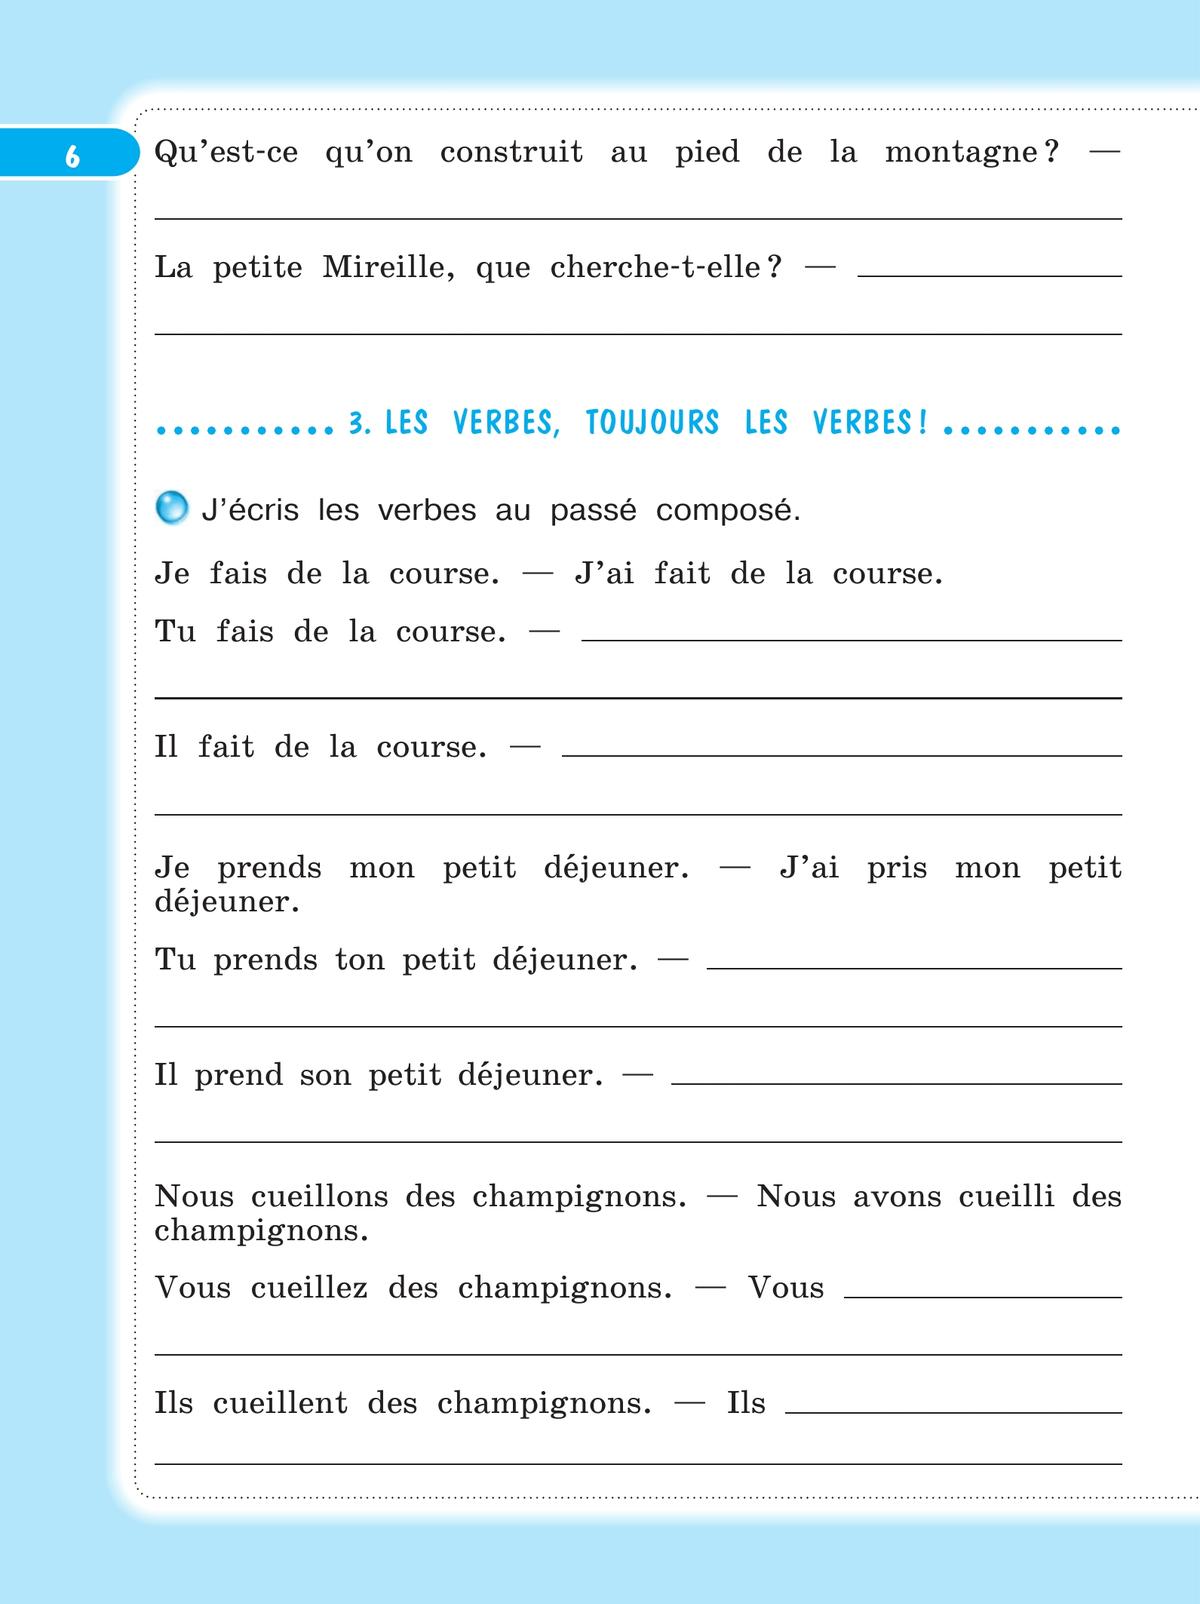 Французский язык. Рабочая тетрадь. 4 класс. 10